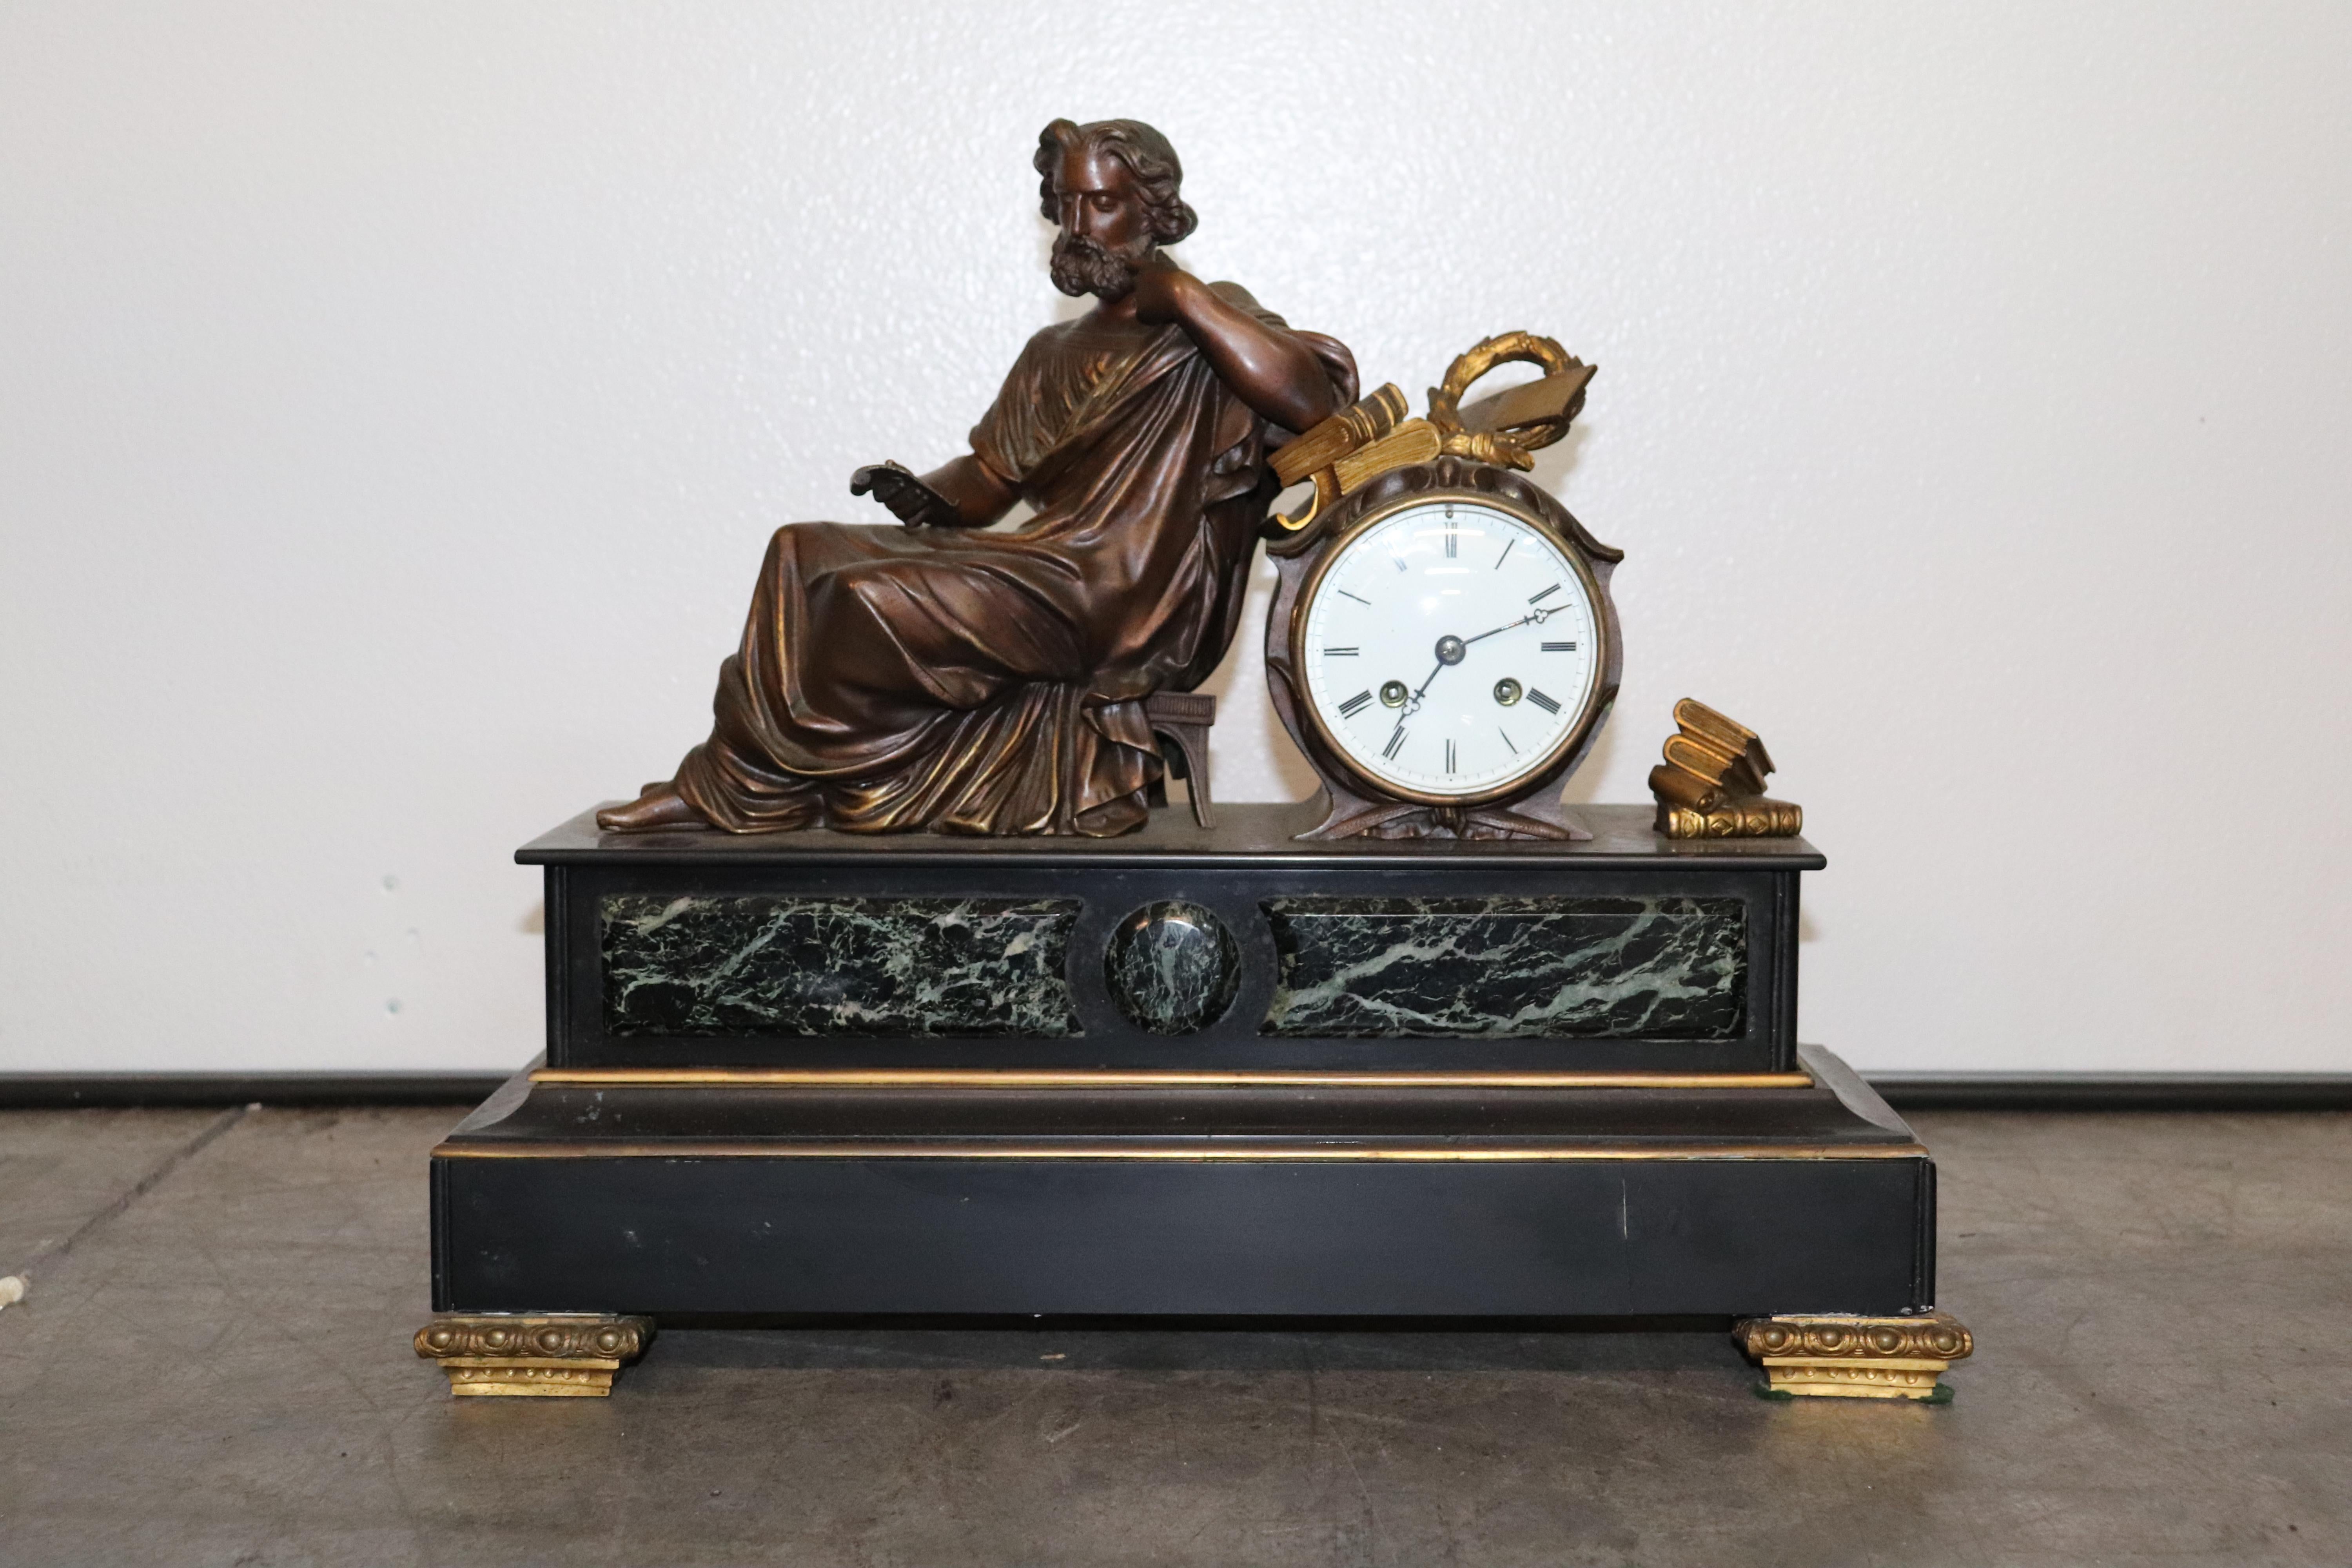 Dies ist ein wunderschönes und sehr einzigartig Französisch Mantel oder Kaminsims Uhr mit einer wunderschönen Figur eines Gelehrten in Roben recling beim Lesen von Büchern. Die Uhr ist mit grünem Verdi-Marmor verkleidet und der Sockel besteht aus